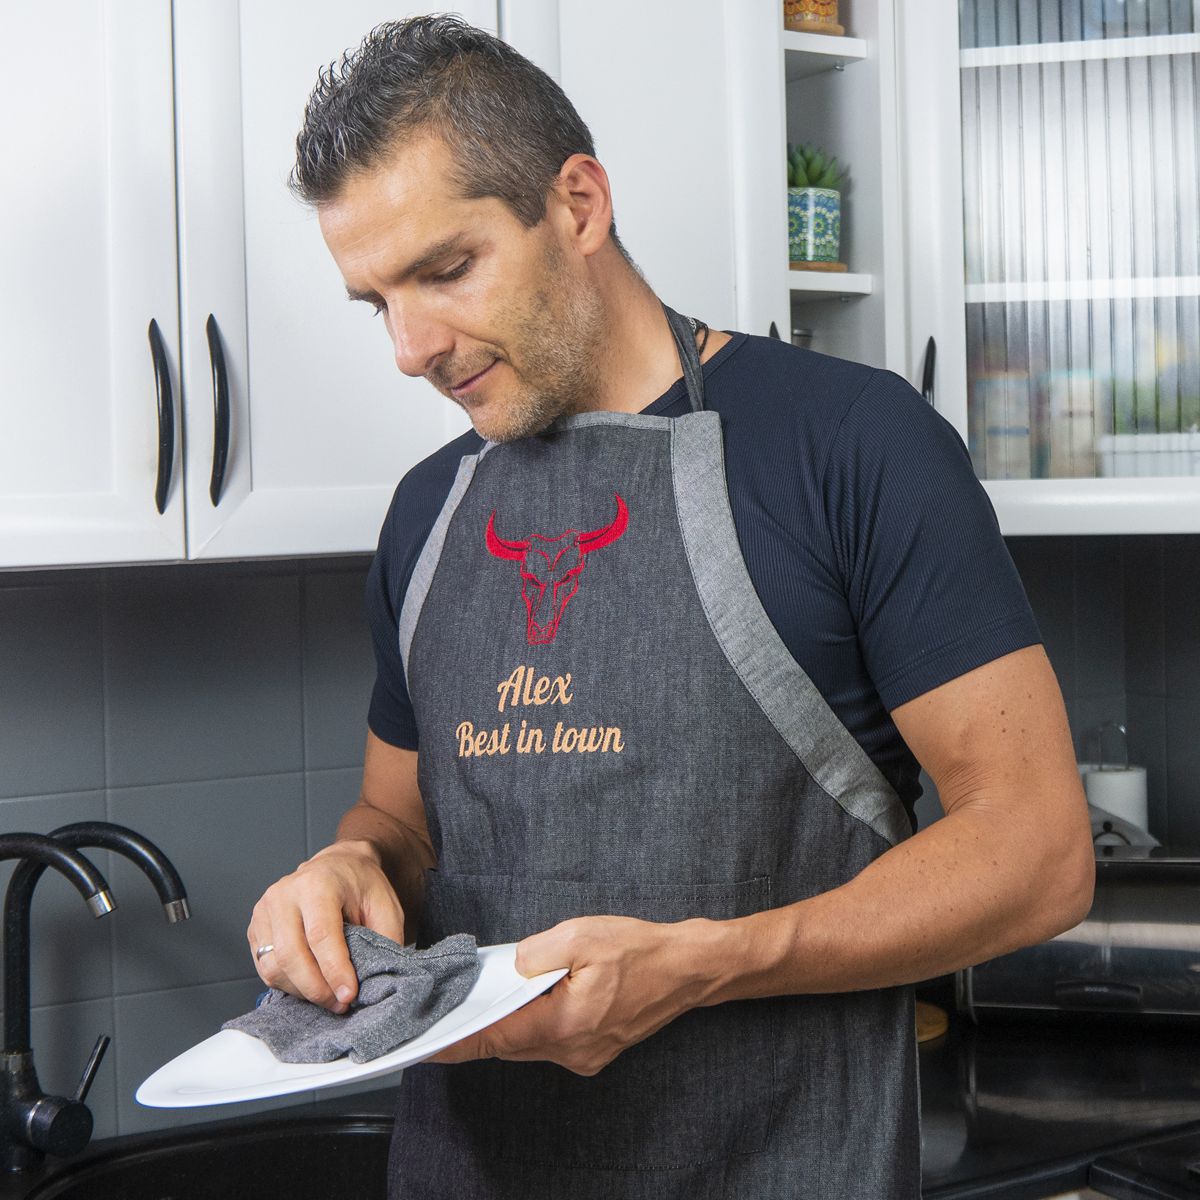 Jeans Kochschürze mit Namen und Motiv bestickt Beispiel Mann in Küche